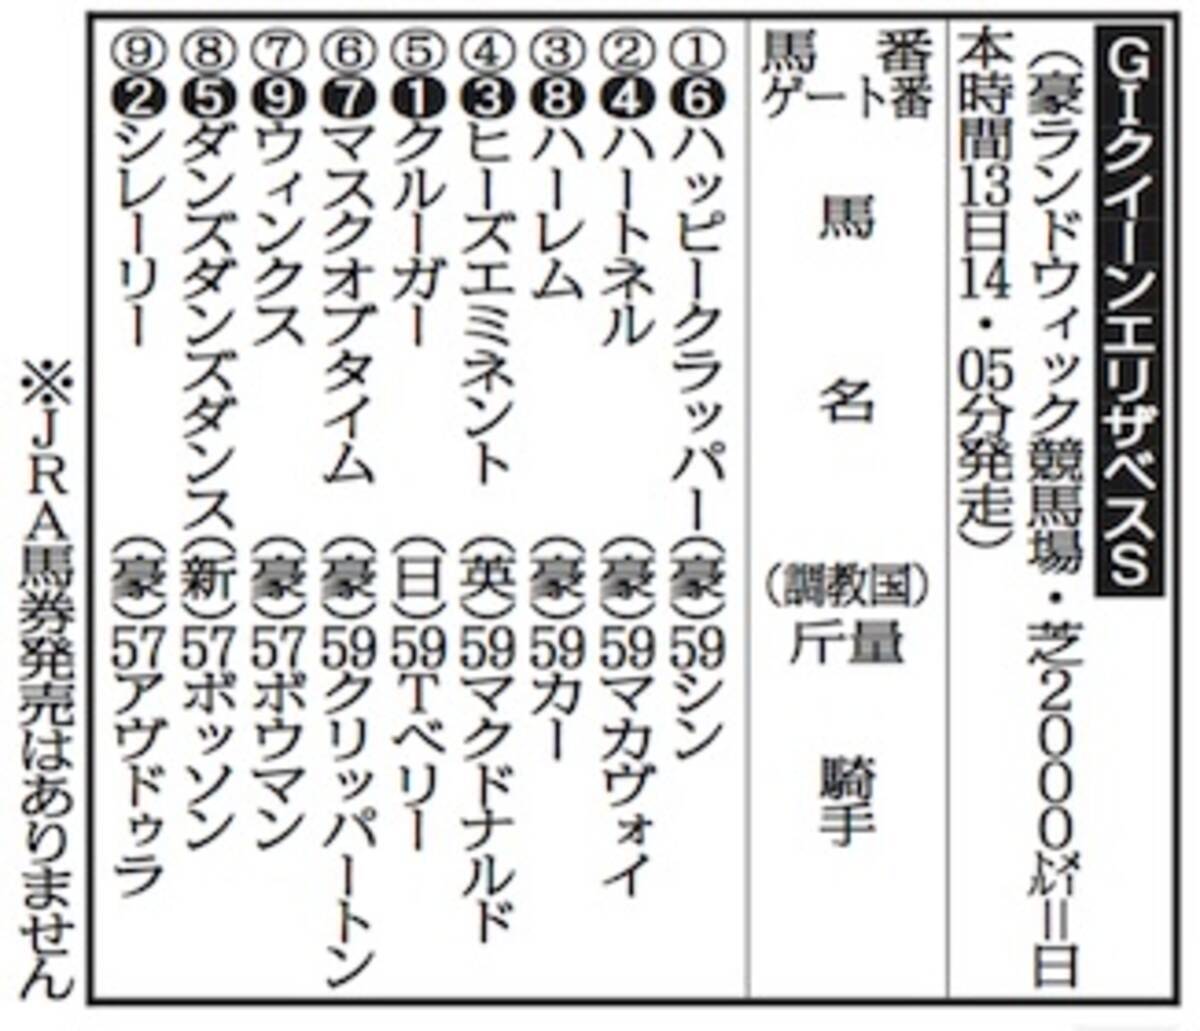 豪ｇiクイーンエリザベスｓ 連闘クルーガーは１番ゲート 19年4月10日 エキサイトニュース